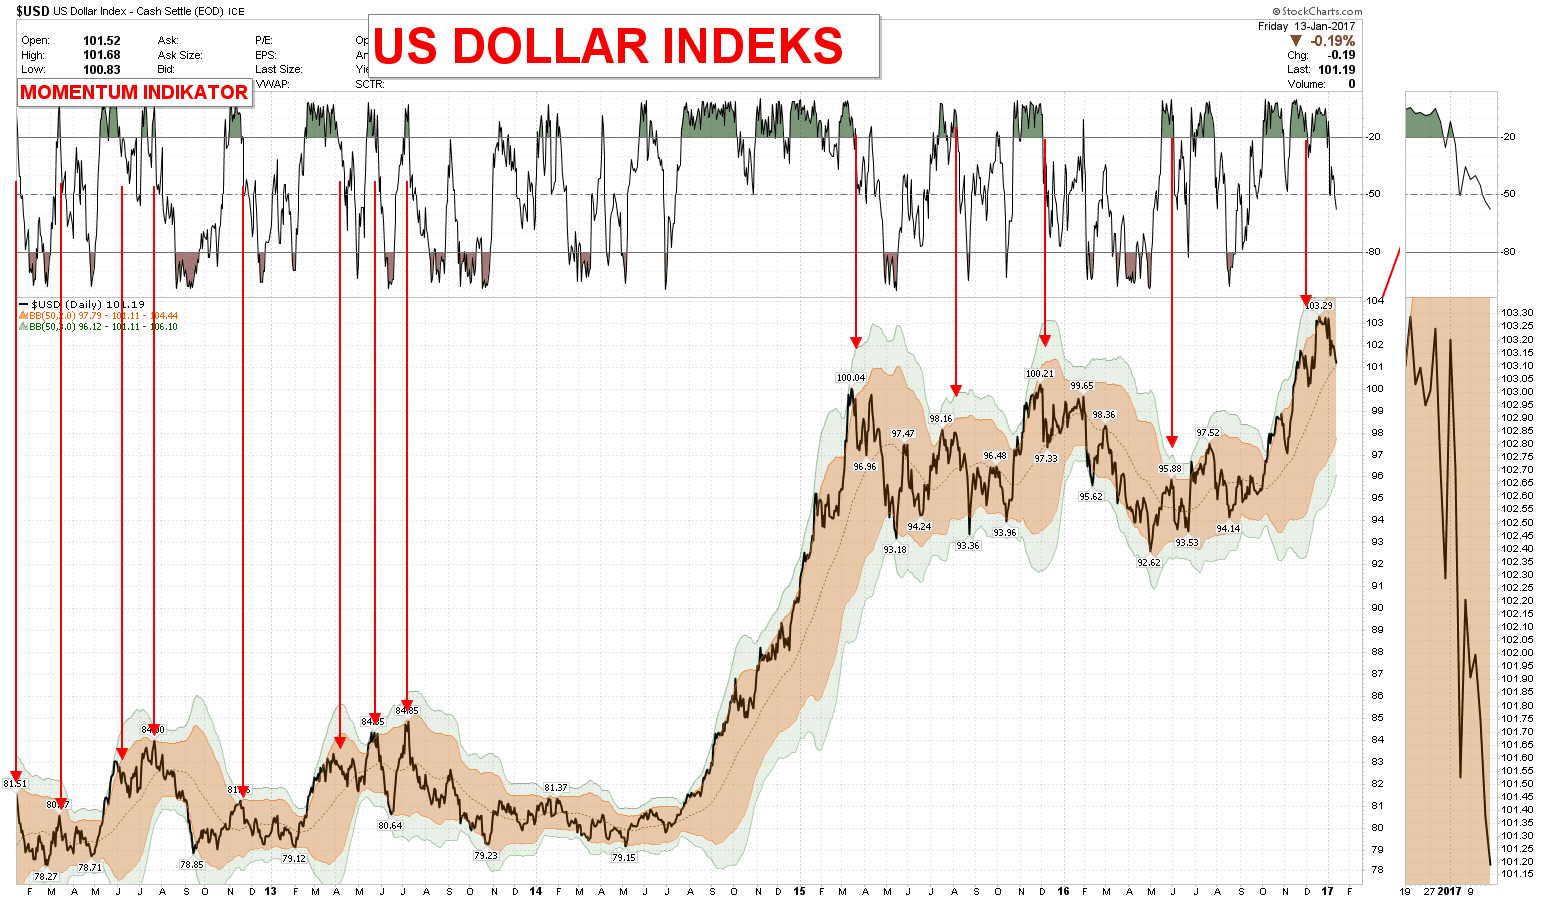 US DOLLAR INDEKS vs MO- MENTUM De røde pilene viser hva som inntreffer når momentum indikatoren faller under 20 og mister sin grønne status.